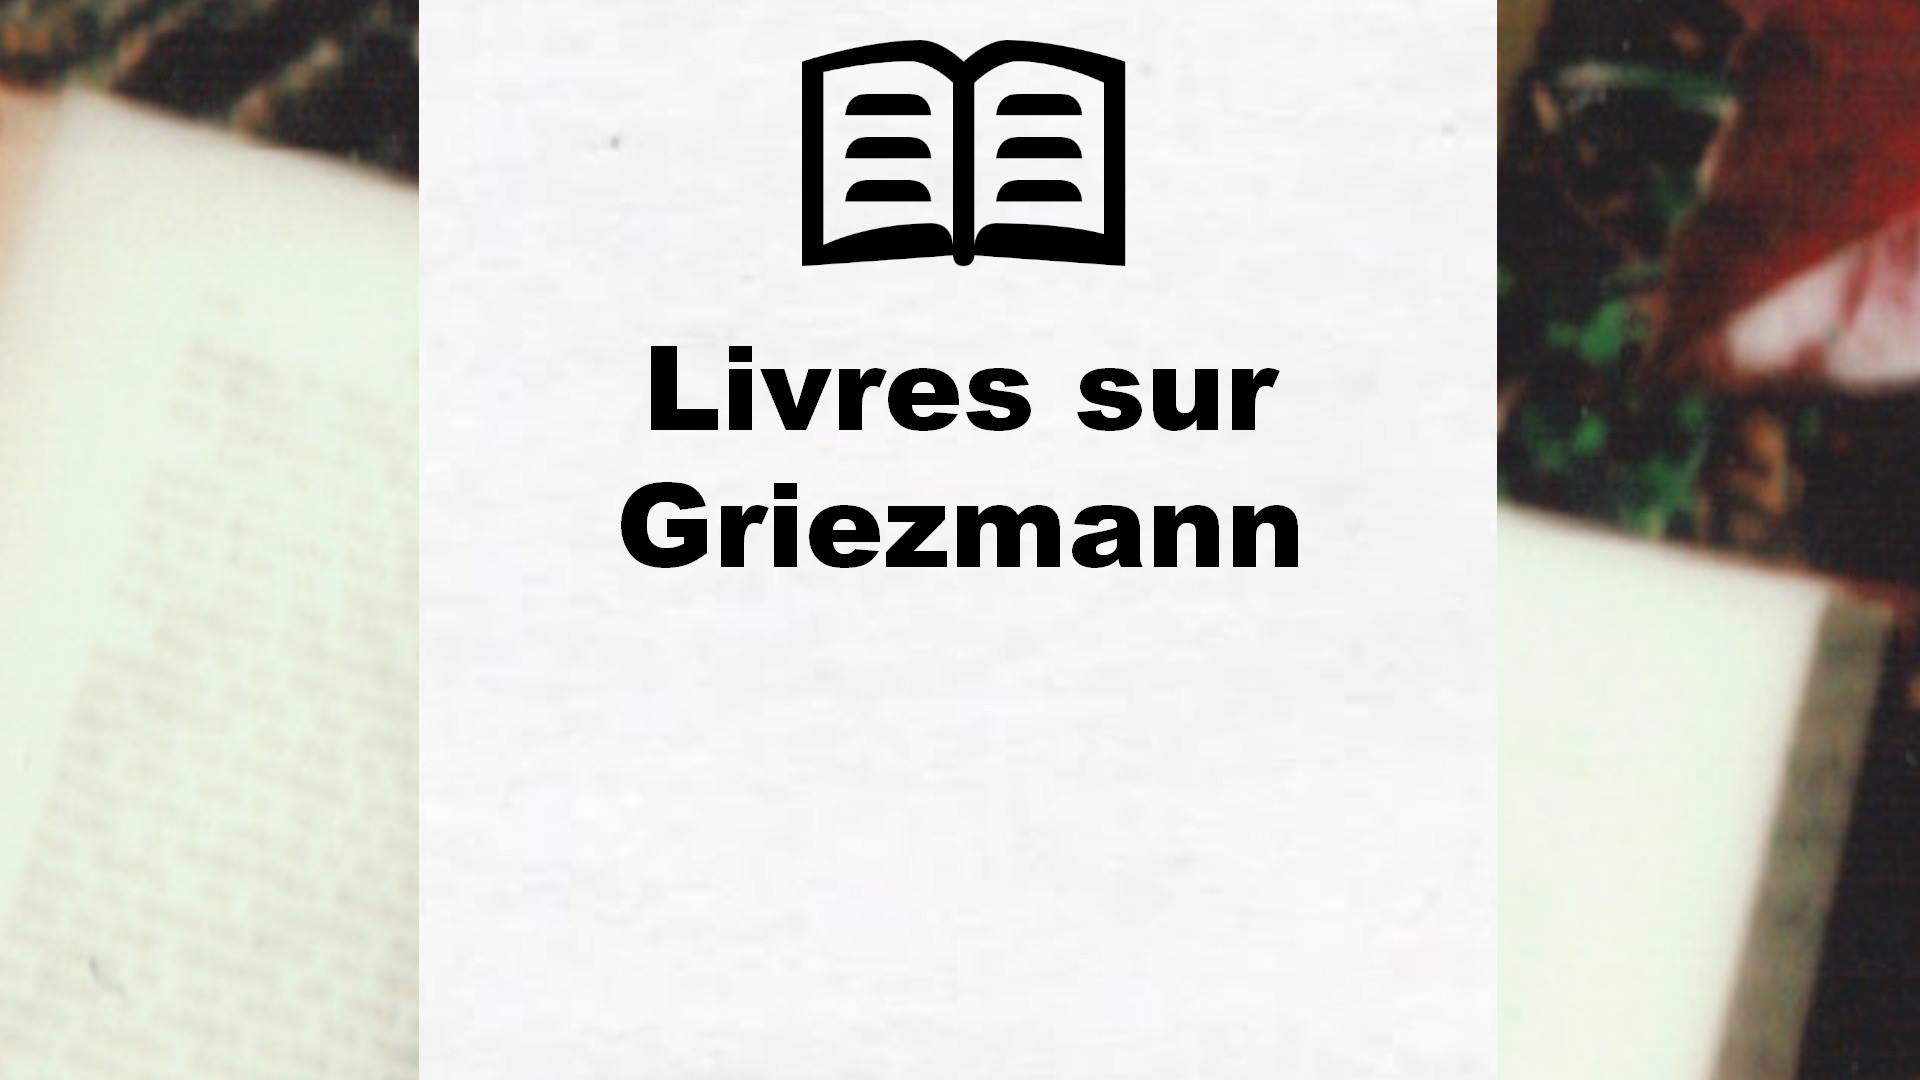 Livres sur Griezmann